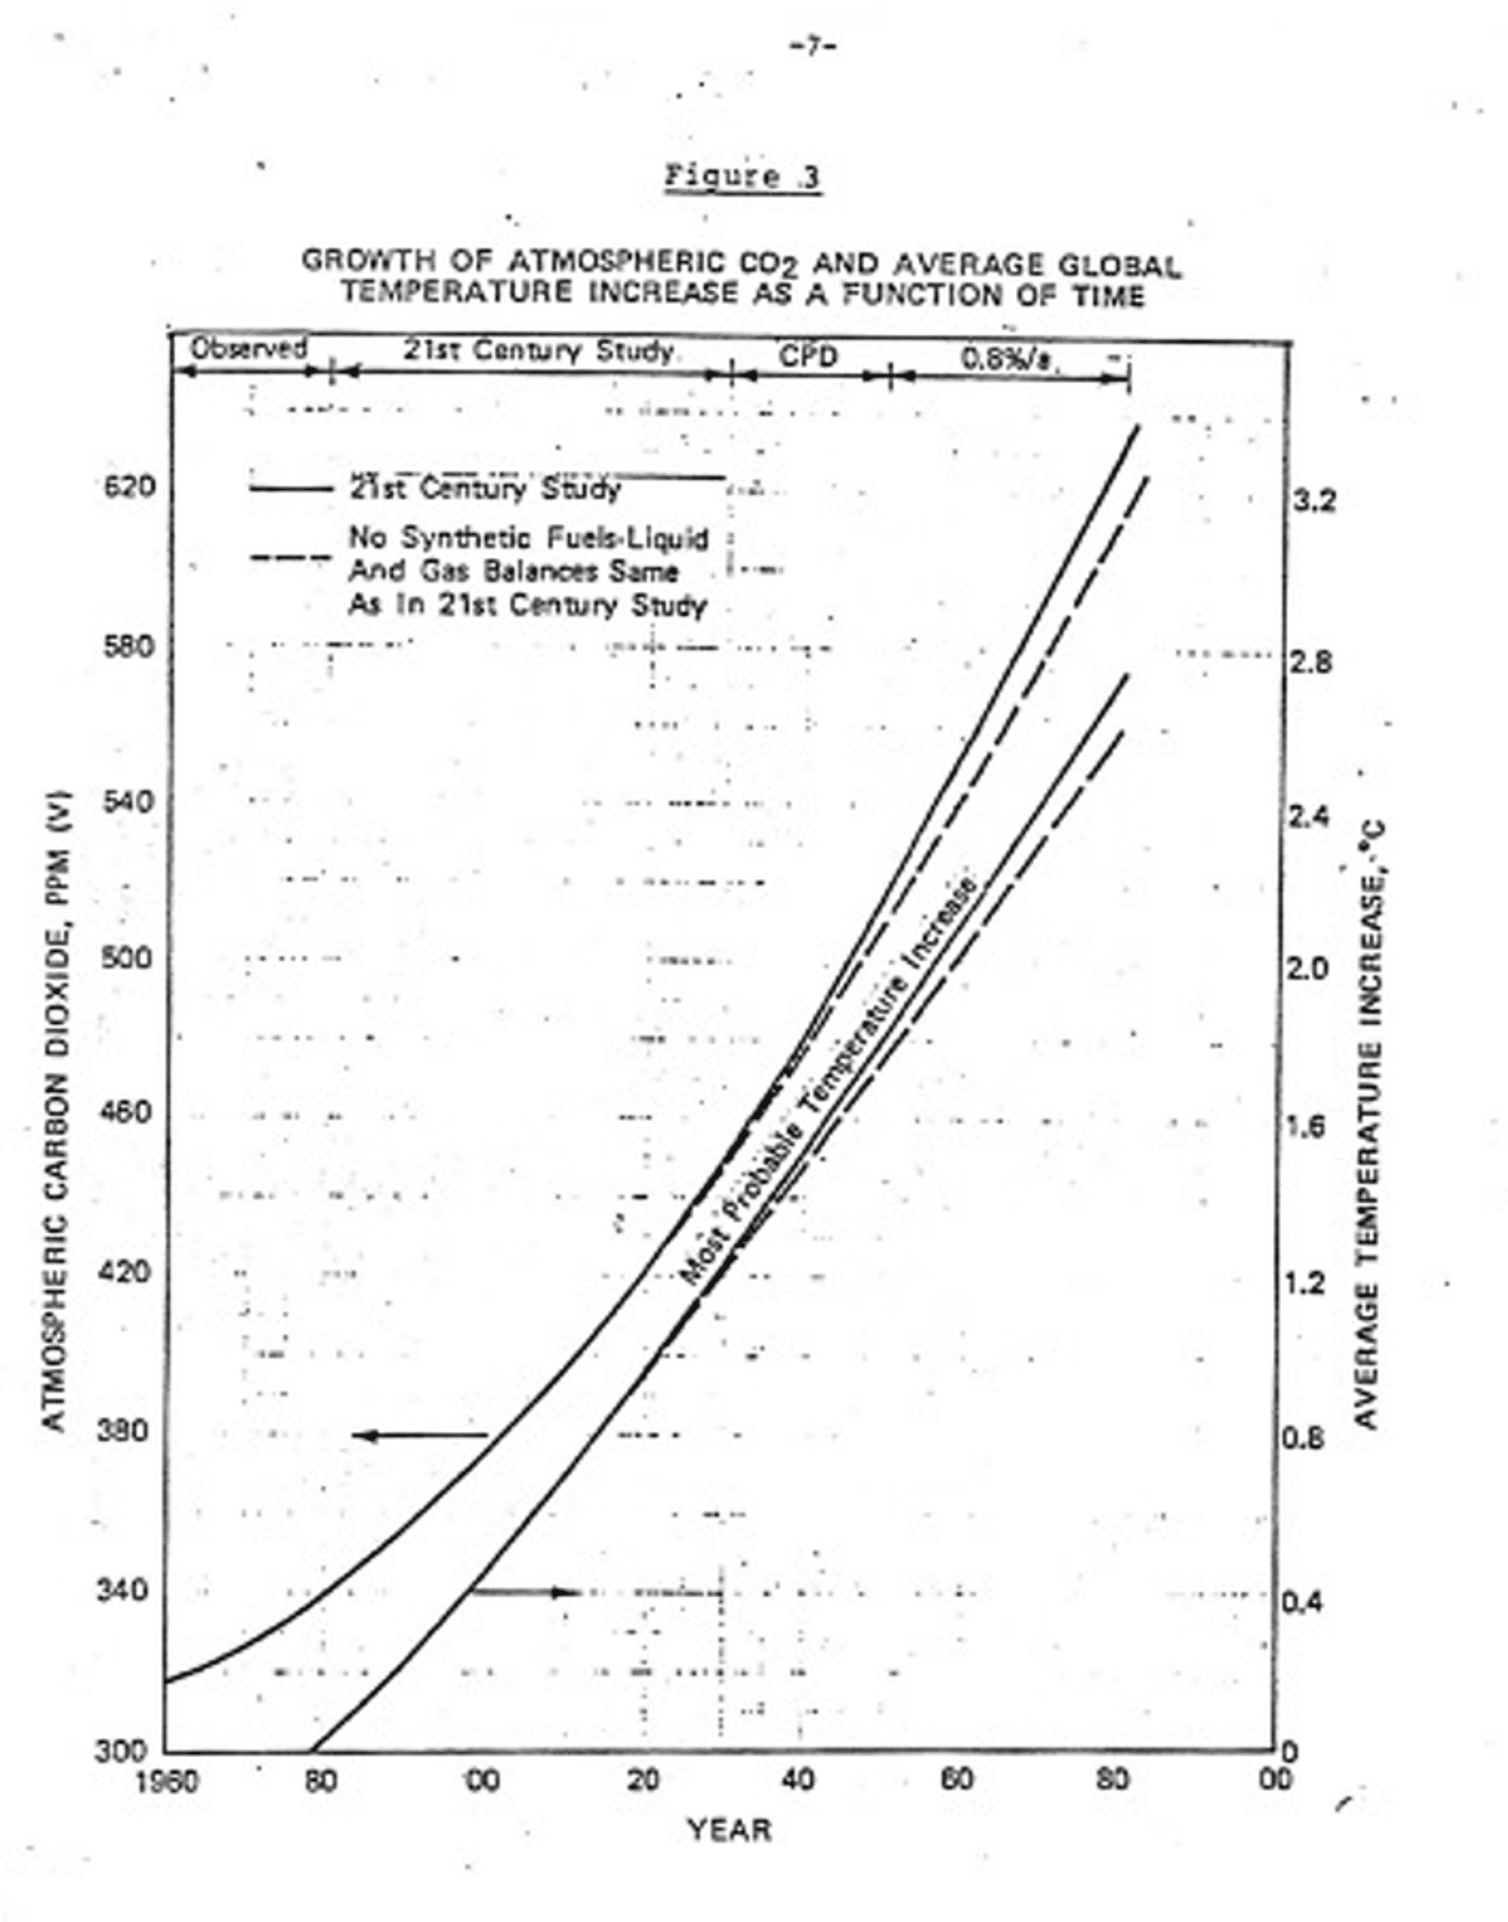 נתון מתוך דו"ח שינויי האקלים הפנימי של אקסון משנת 1982, החוזה כמה פחמן דו חמצני יצטבר מדלקים מאובנים  ומה יהיה שיעור התחממות כדור הארץ במהלך המאה ה-21 אם לא יינקטו בפעולה להקטנת הפליטות. התחזית של אקסון הייתה מדויקת להפליא.